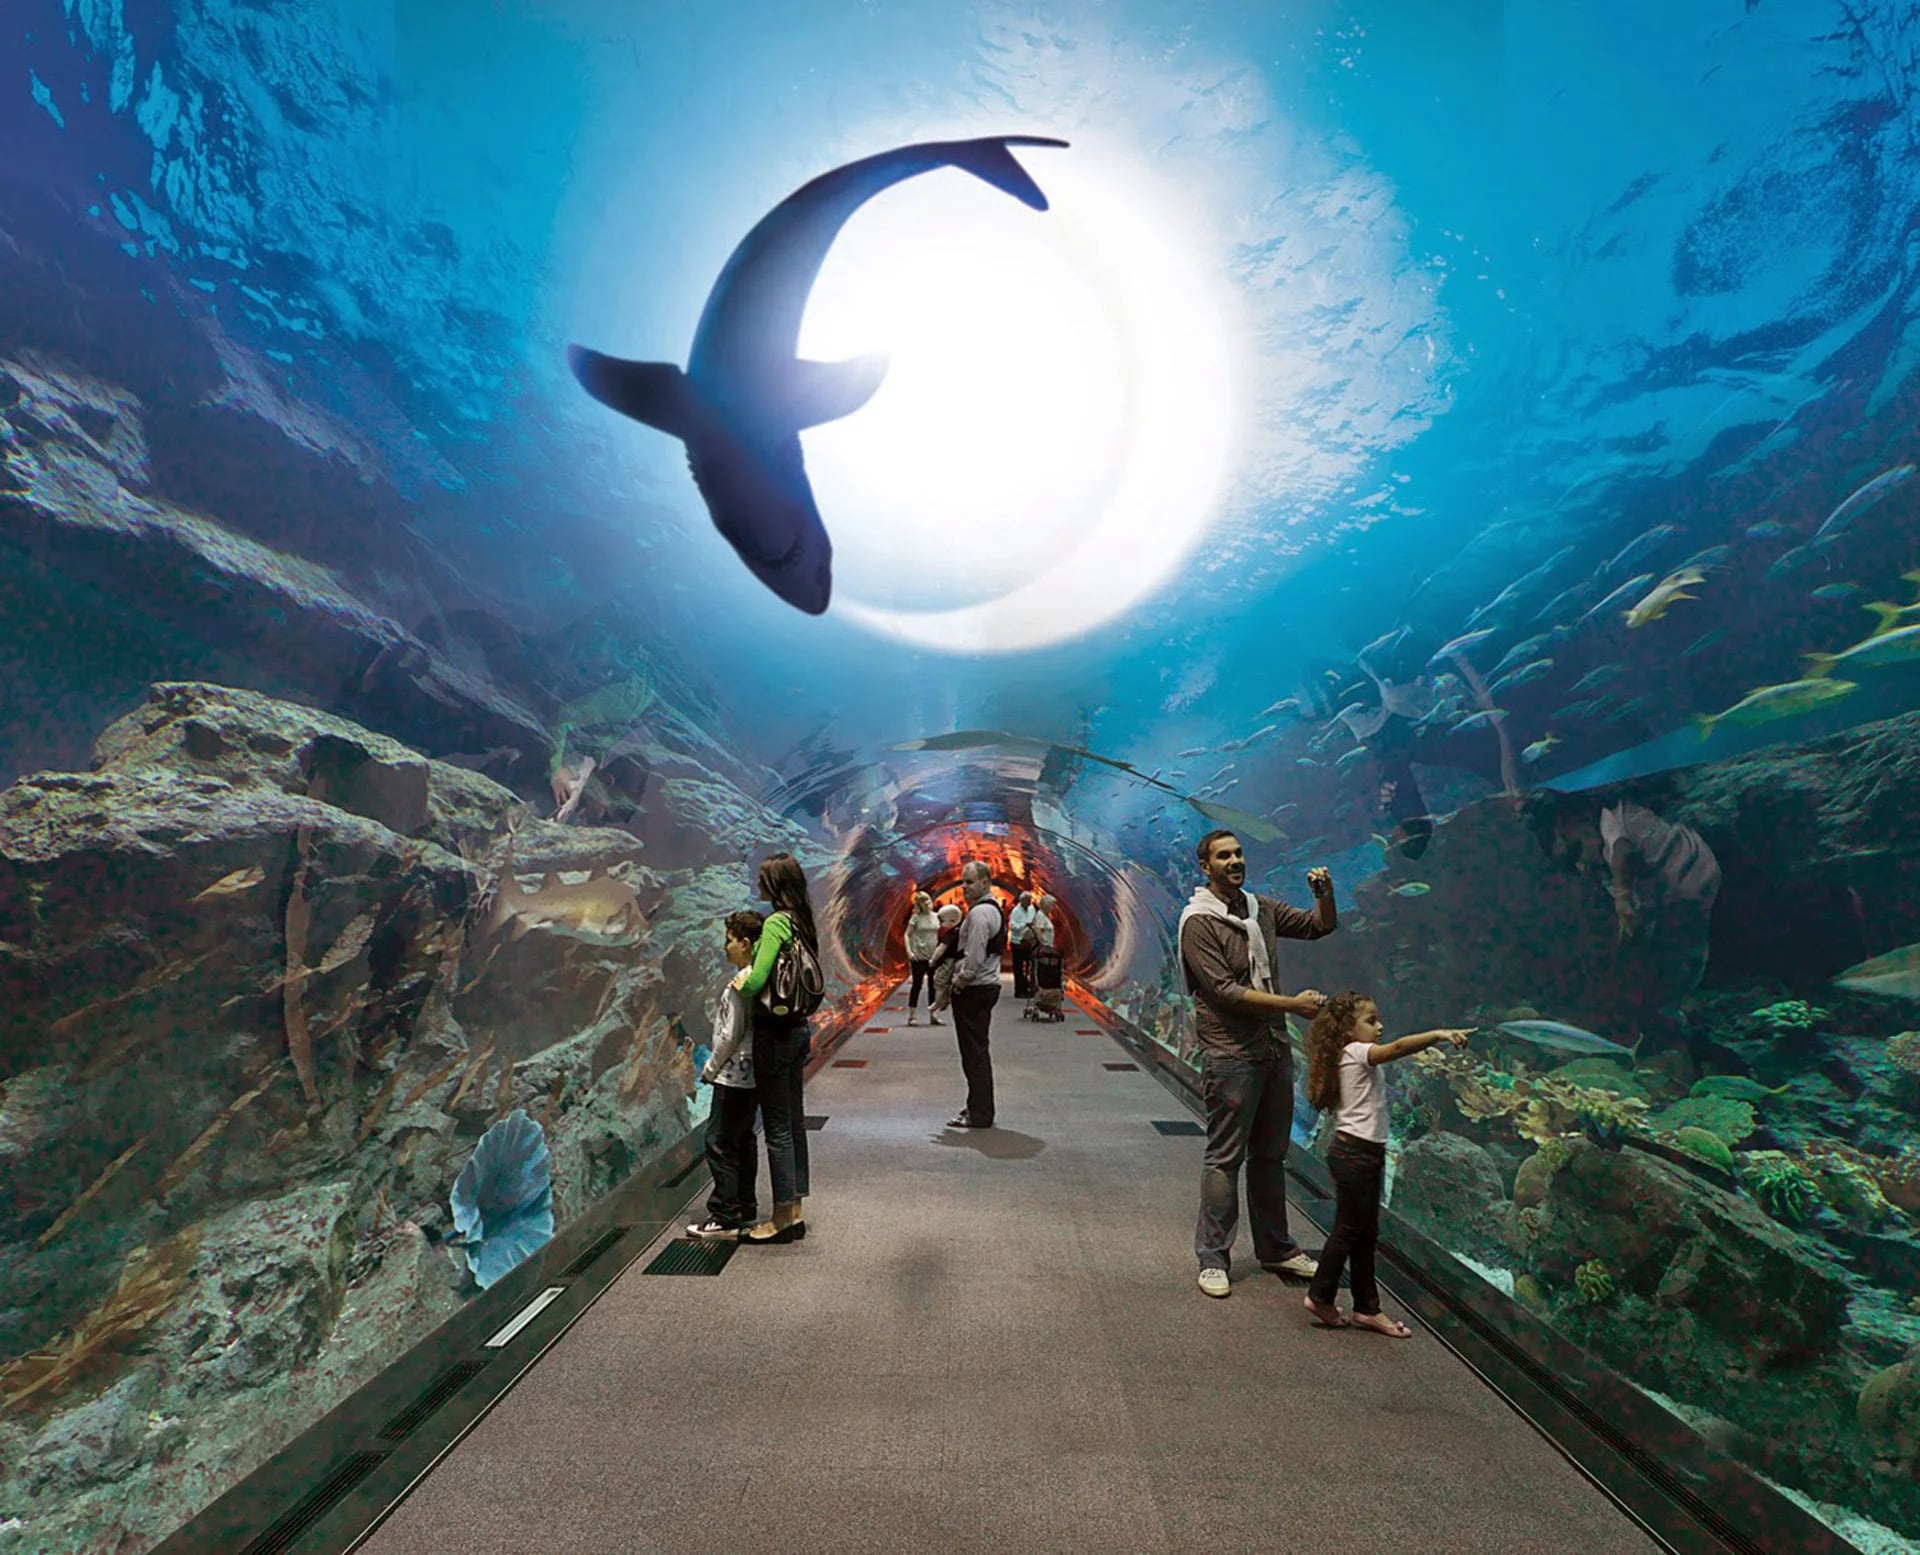 Su túnel panorámico ofrece un increíble vista del mar en su interior y se encuentra en la parte inferior de uno de los shoppings más visitados en Dubai